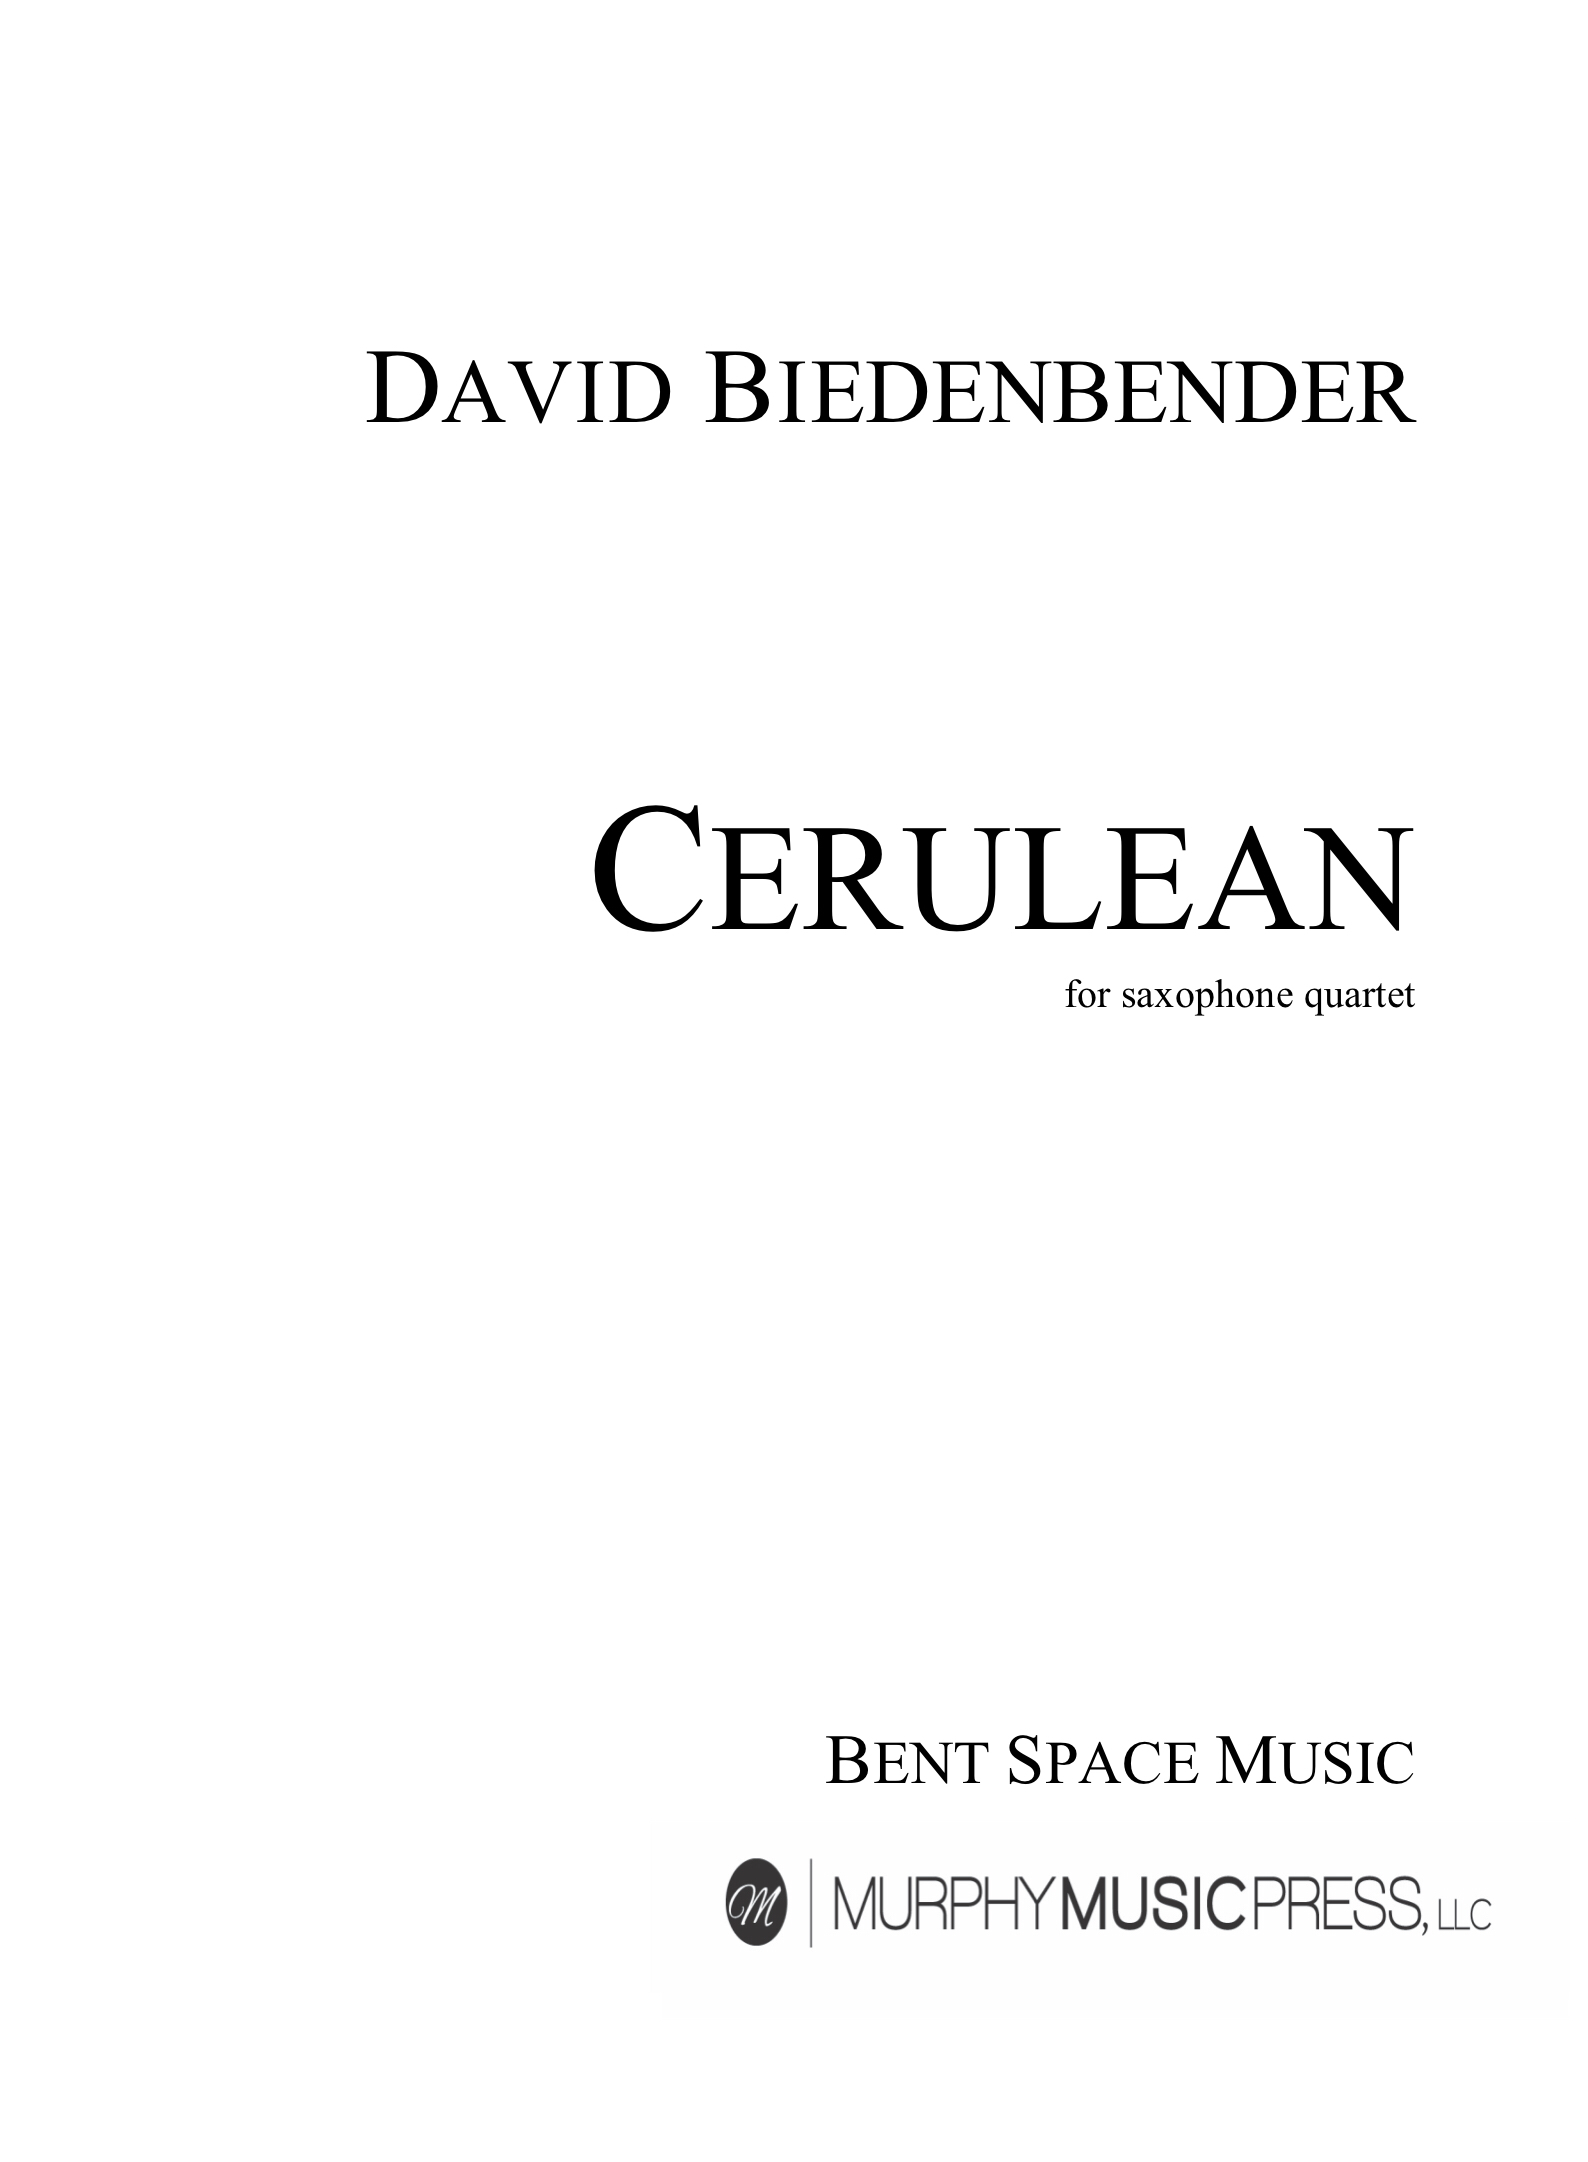 Cerulean  by David Biedenbender 